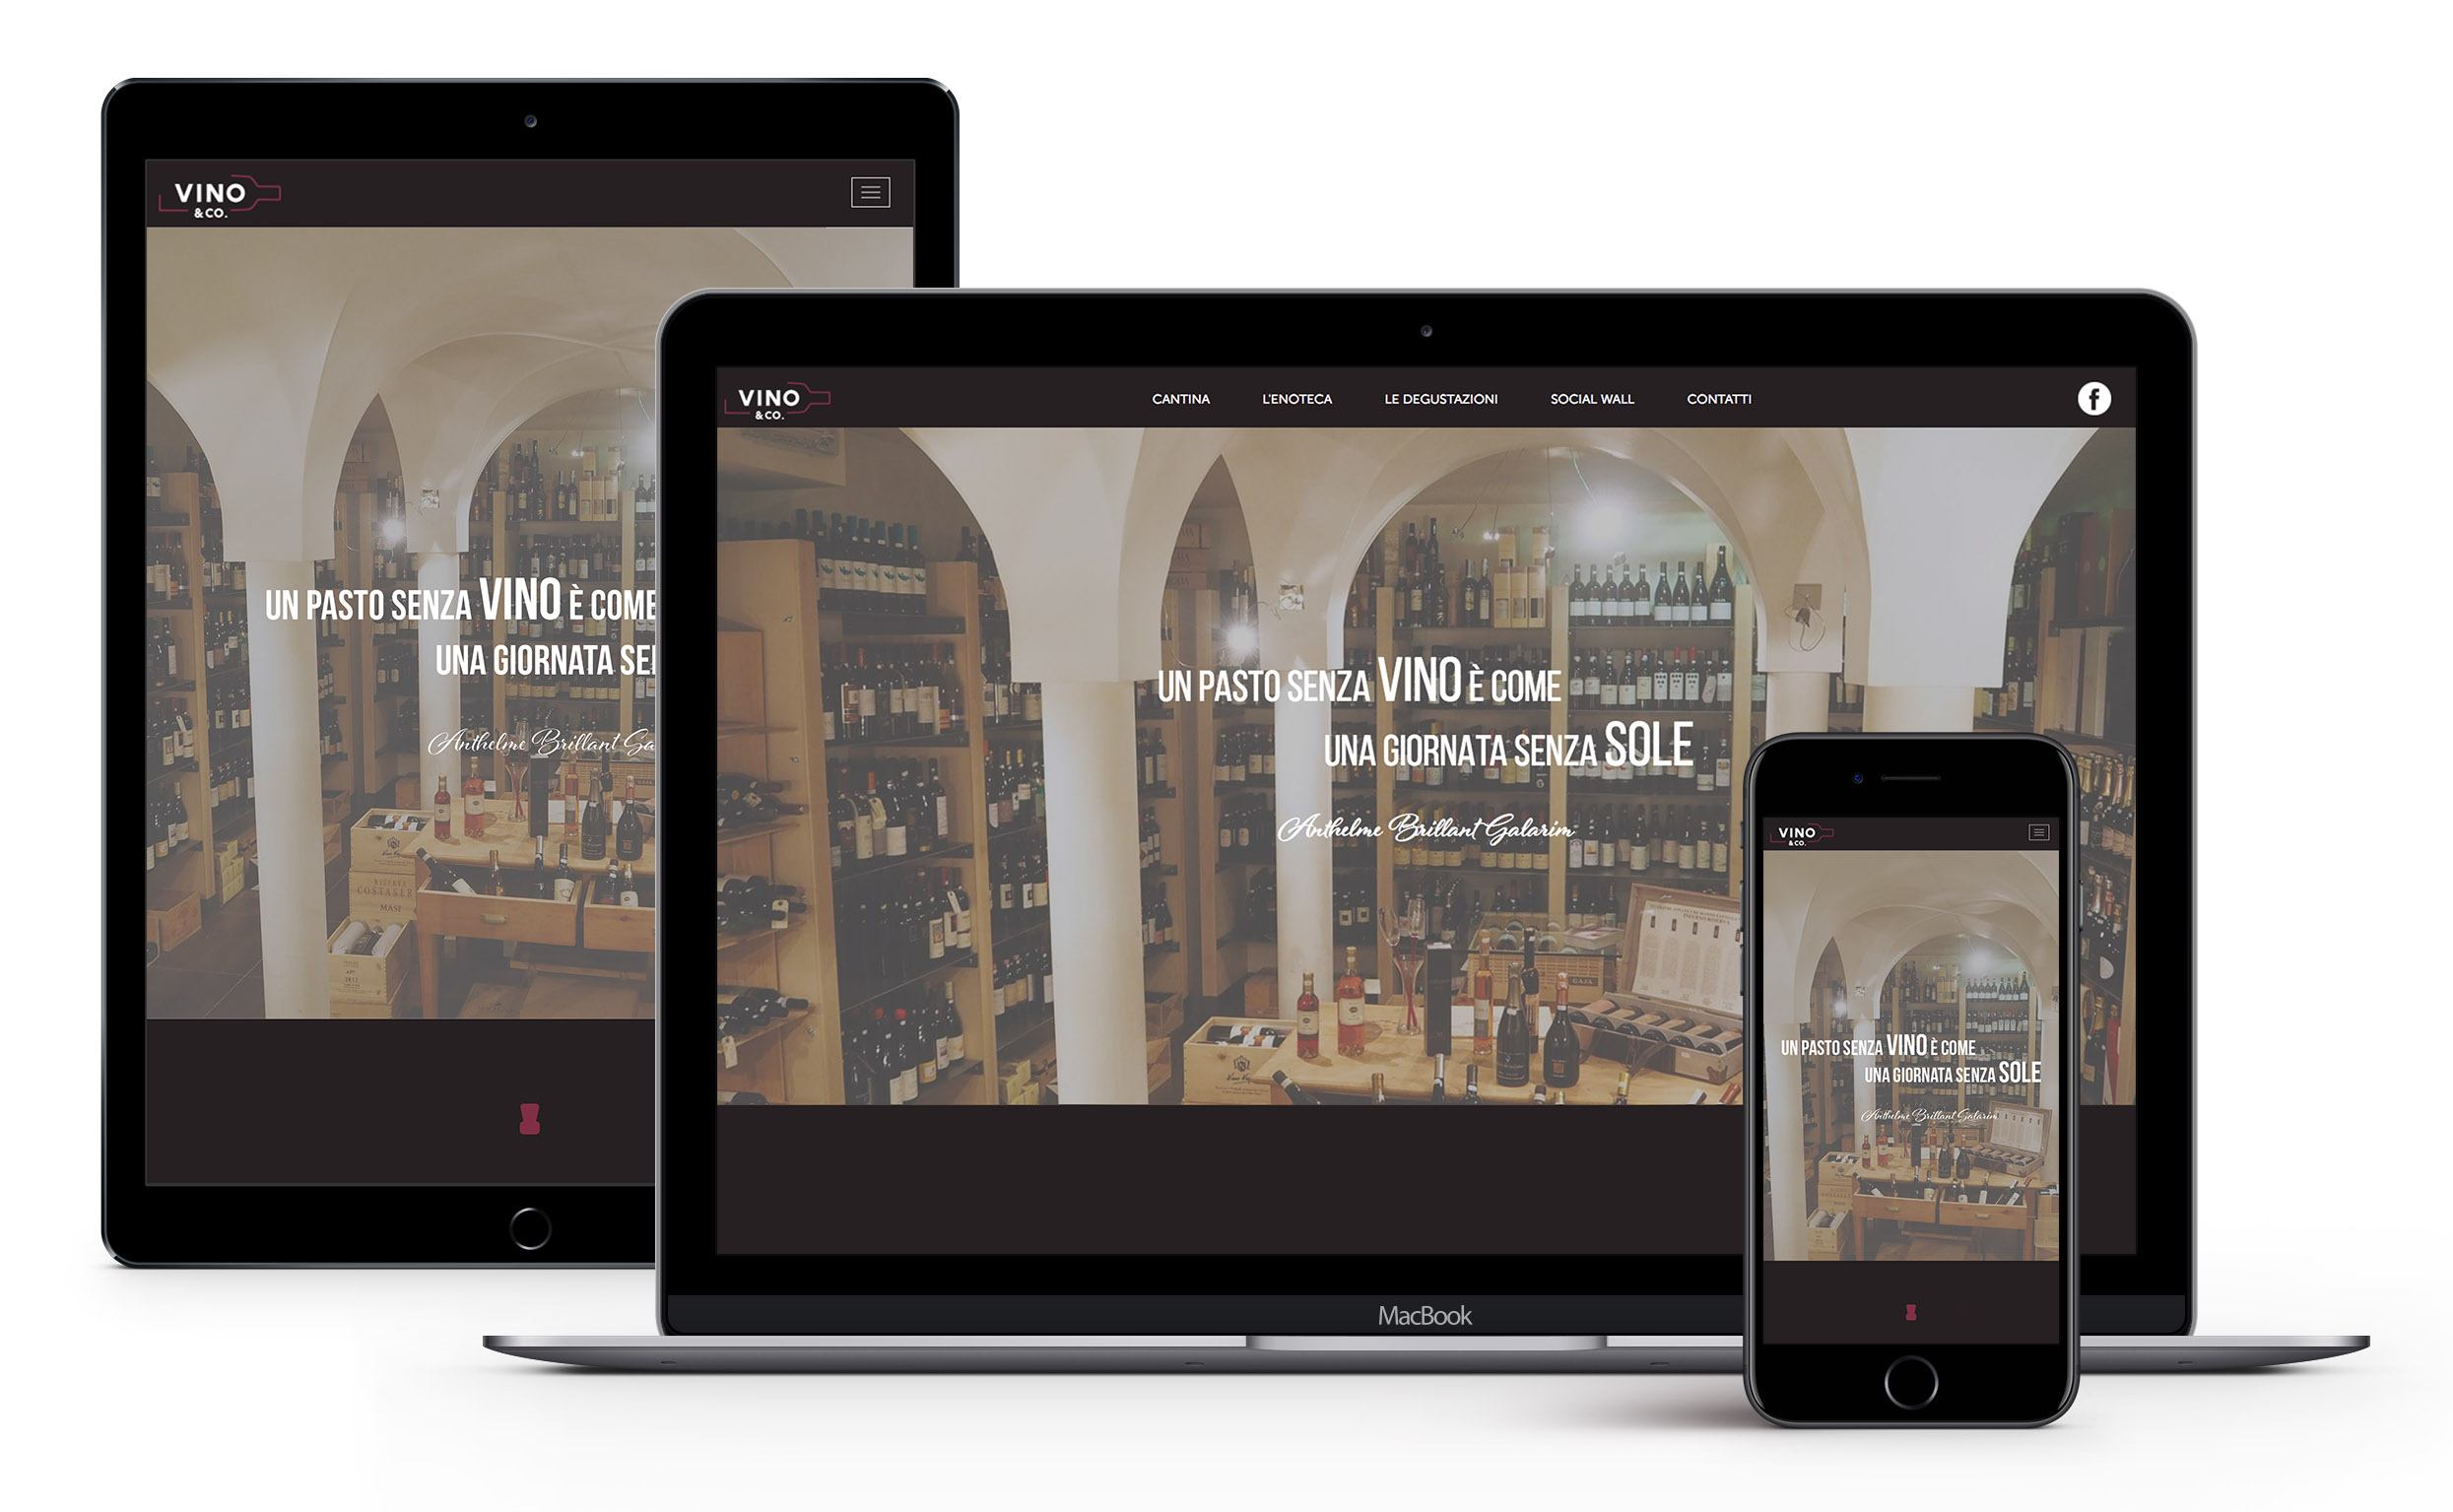 Progettazione sito internet "Vini & Co" by Webtek